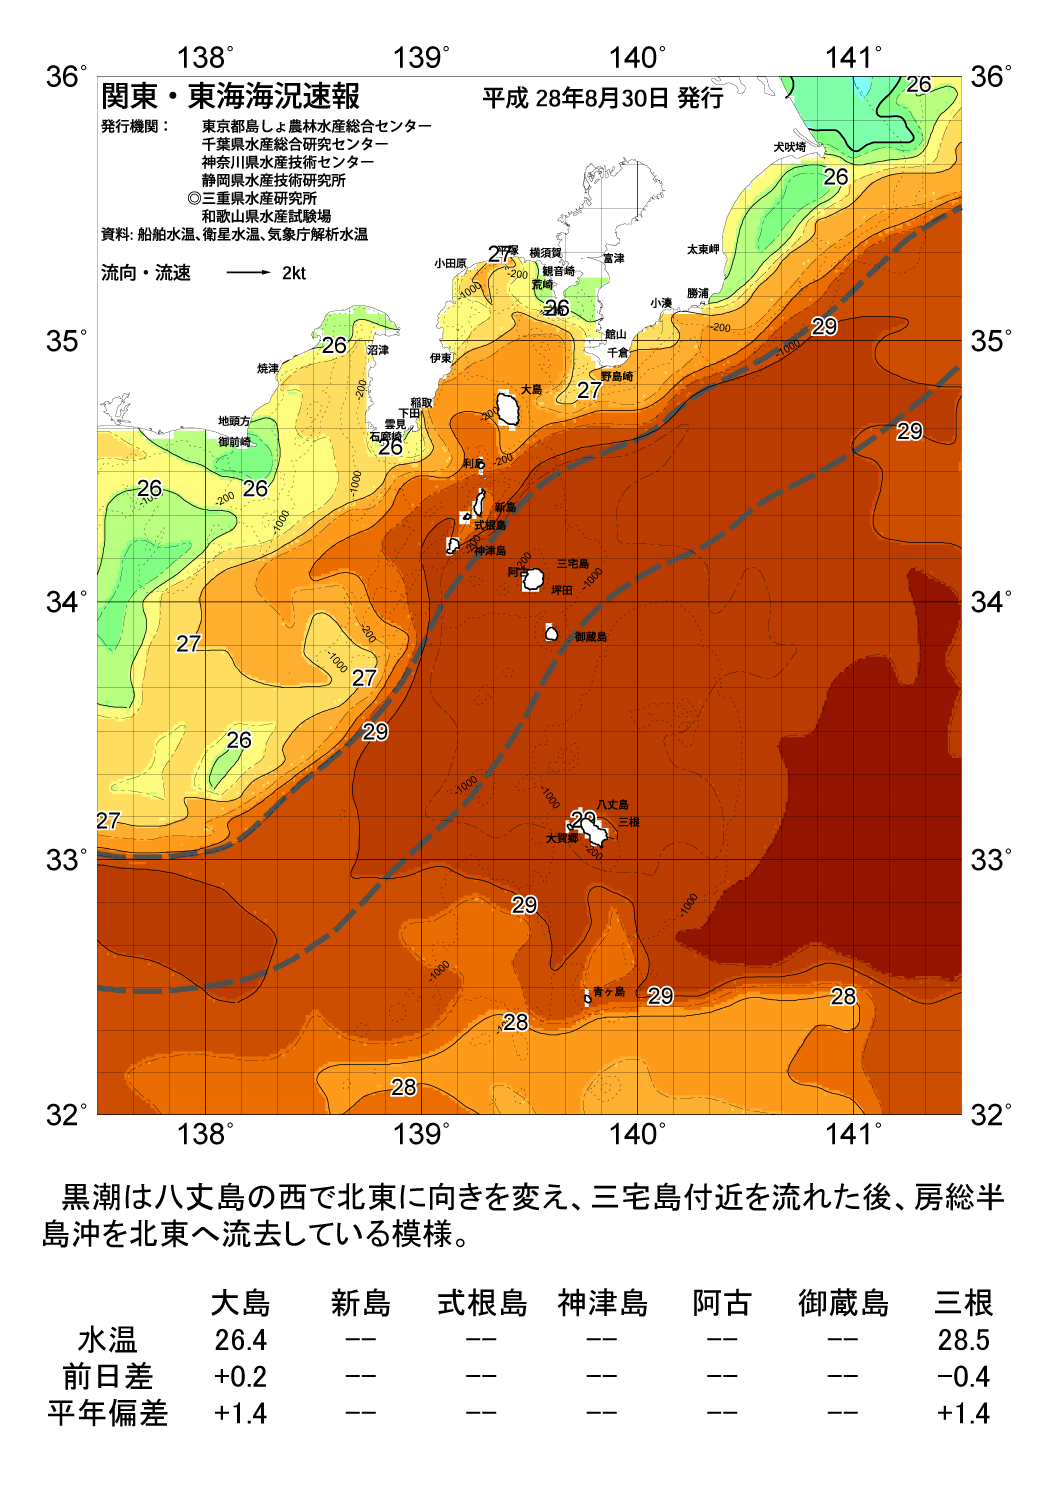 海の天気図2016年8月30日 東京都島しょ農林水産総合センター